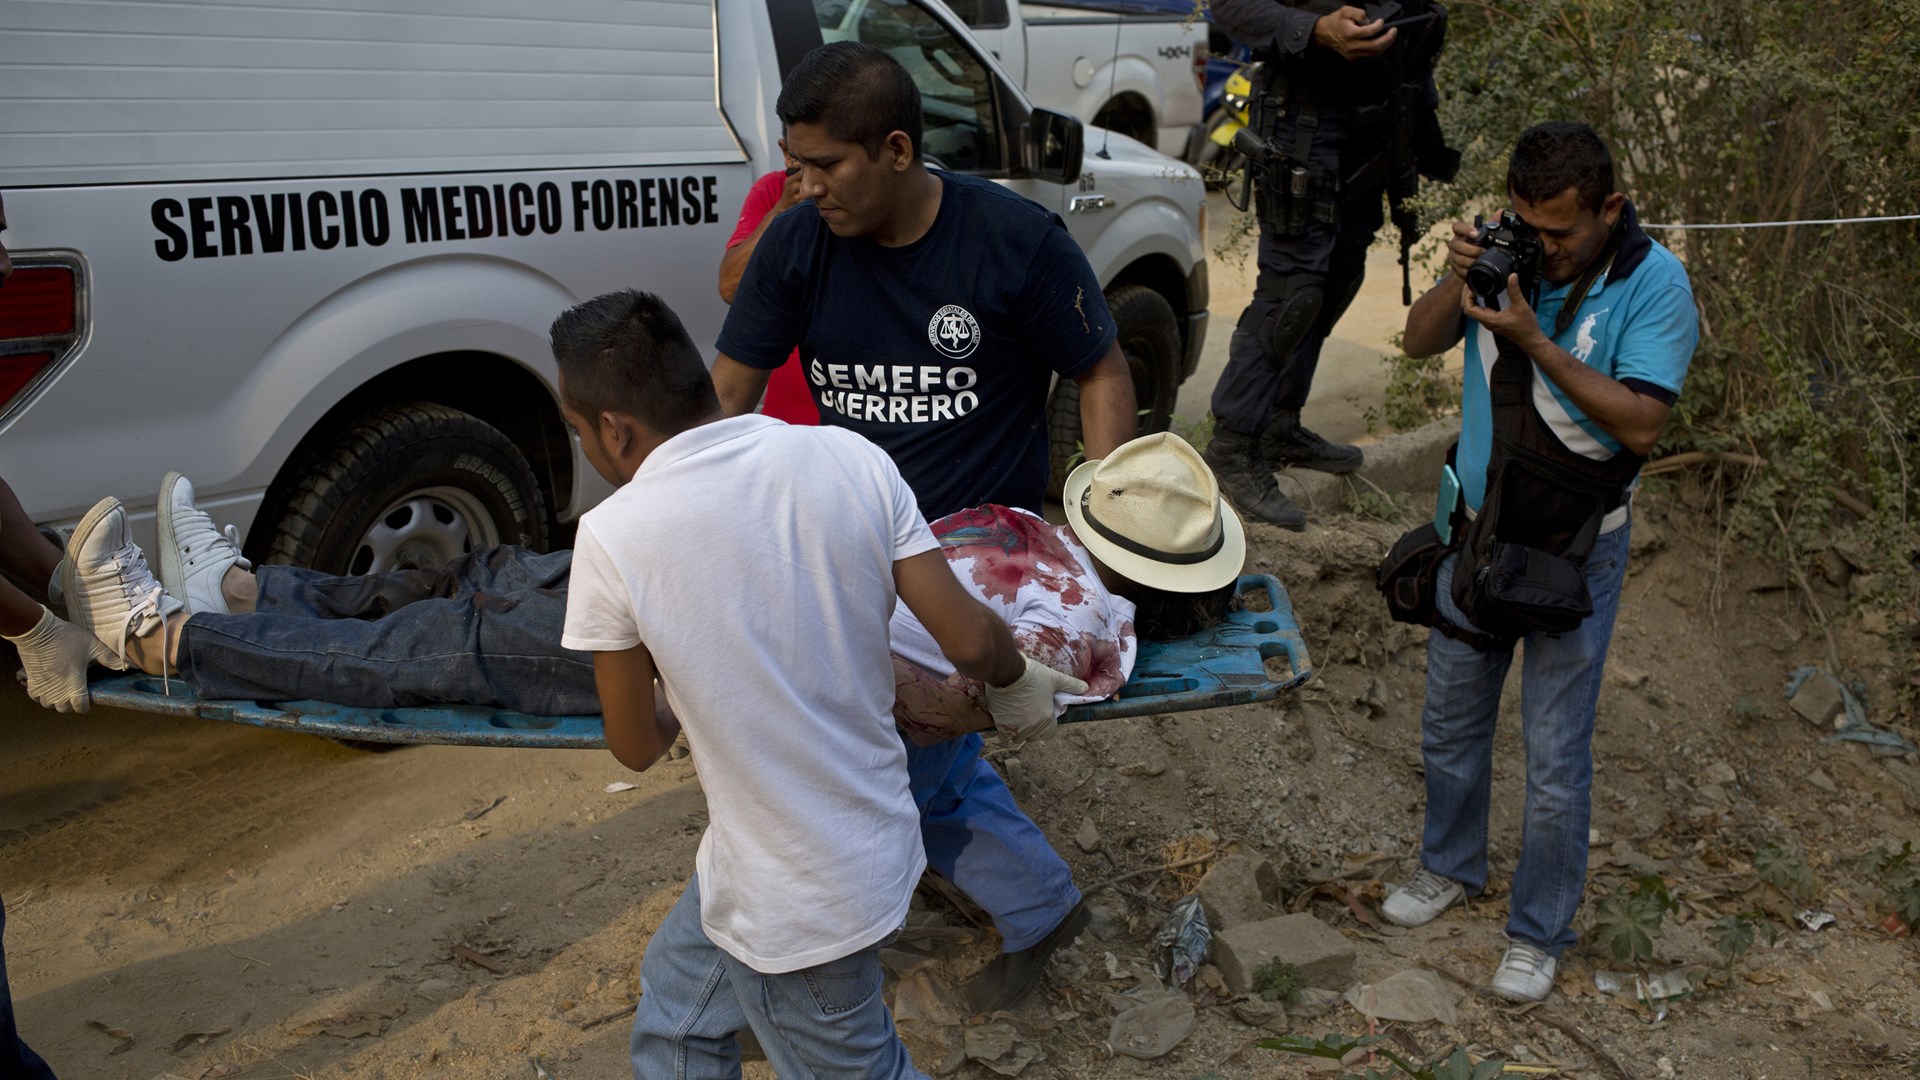 Χωρίς τέλος η αιματοχυσία στο Μεξικό: Άλλα 15 πτώματα βρέθηκαν σε εγκαταλελειμμένο φορτηγάκι – ΦΩΤΟ